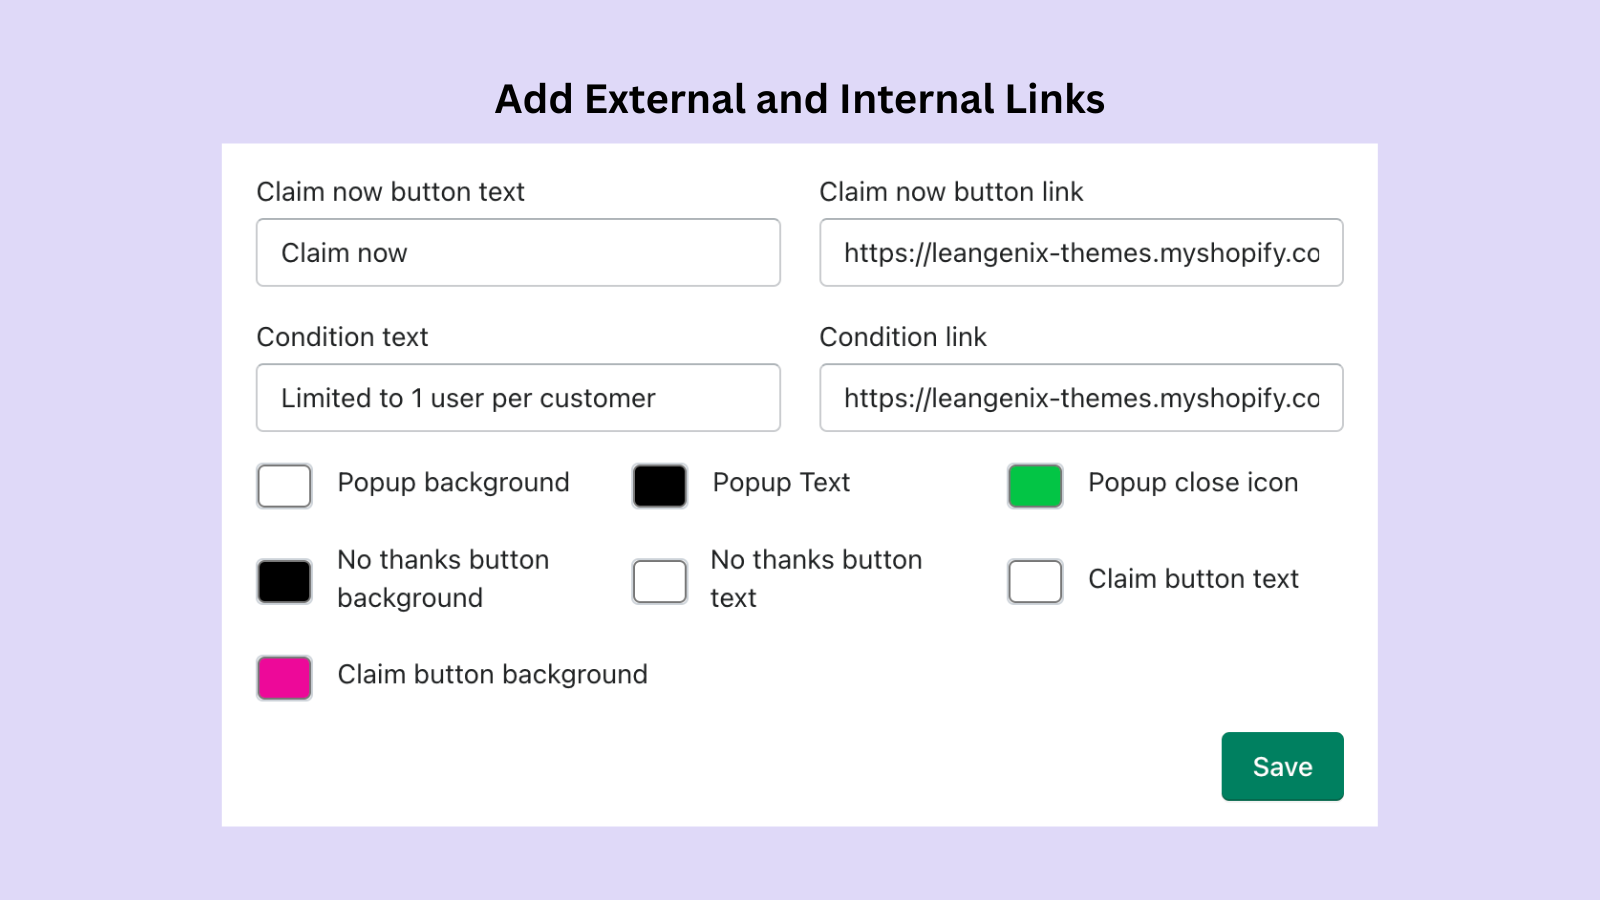 Add external and internal links